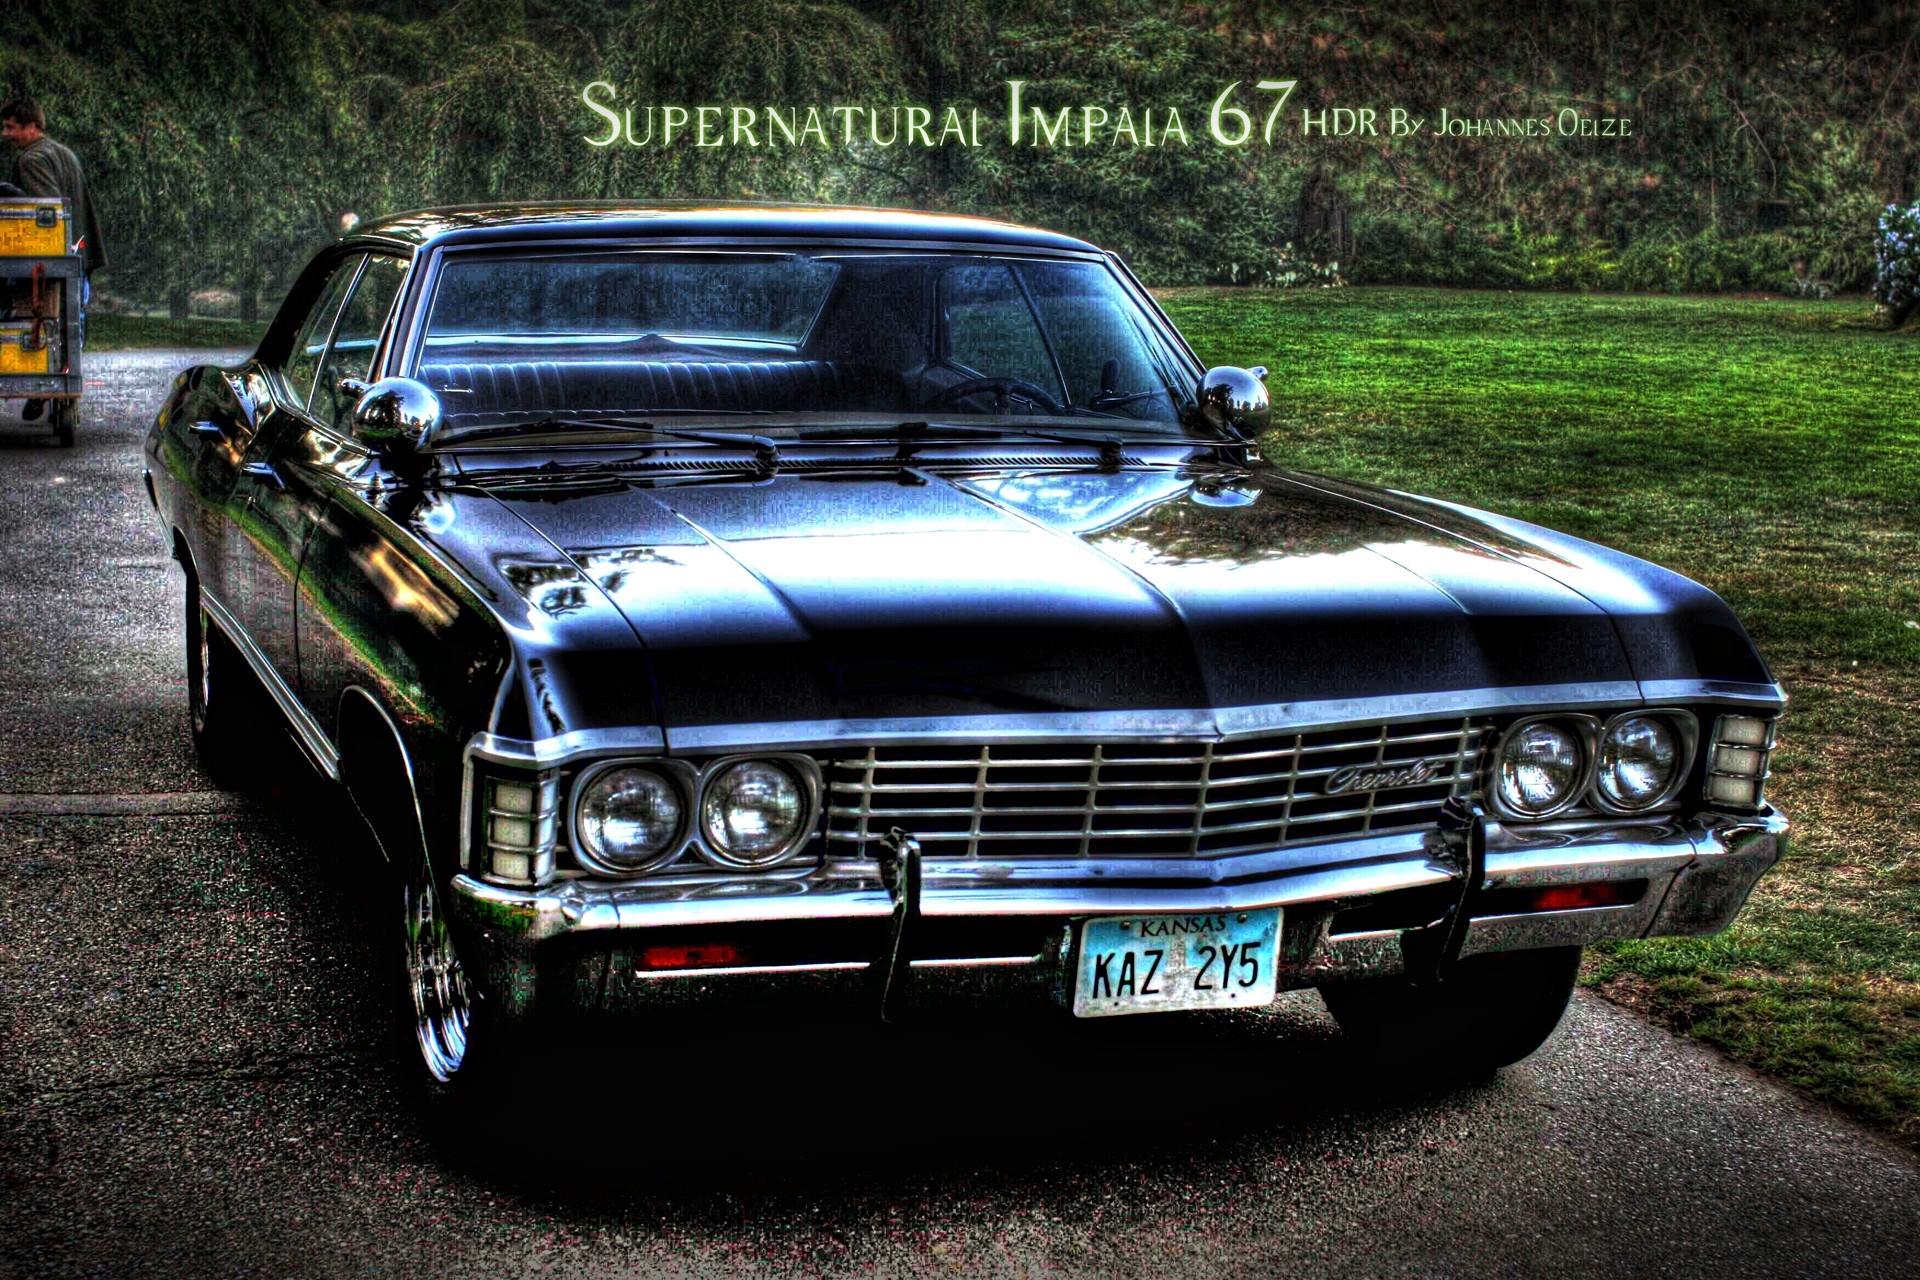 Supernatural Impala Wallpaper (68+ images)
 1967 Chevy Impala Supernatural